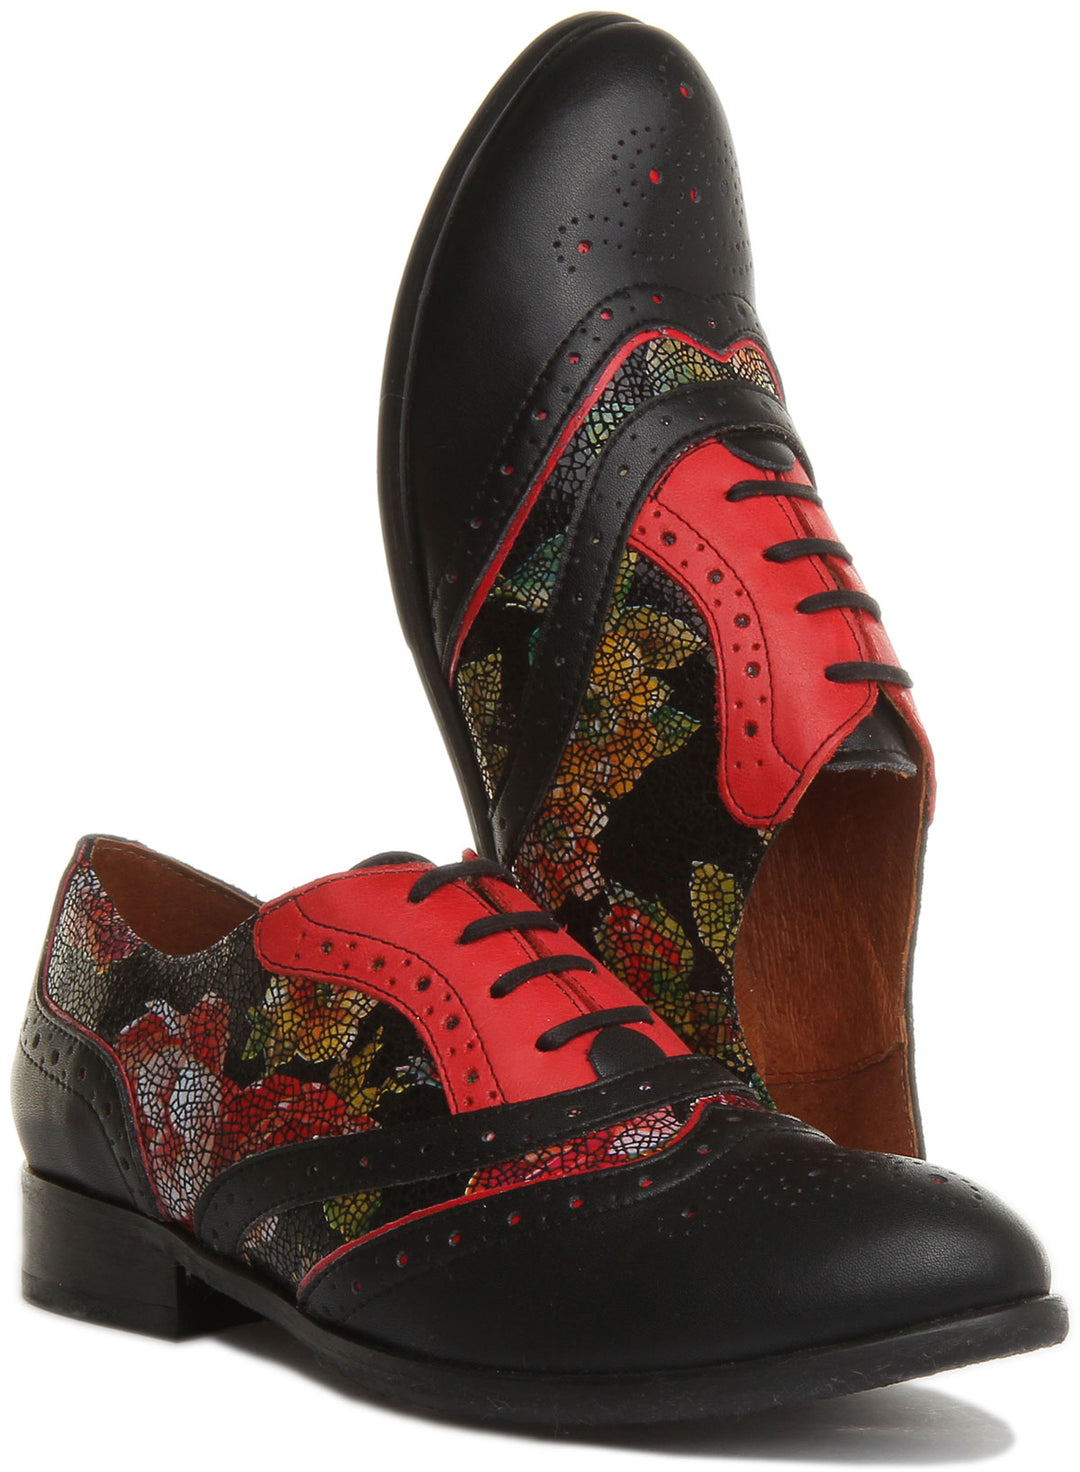 JUSTINREESS Roxana Zapatos de cordón de cuero con flores para mujer en negro rojo